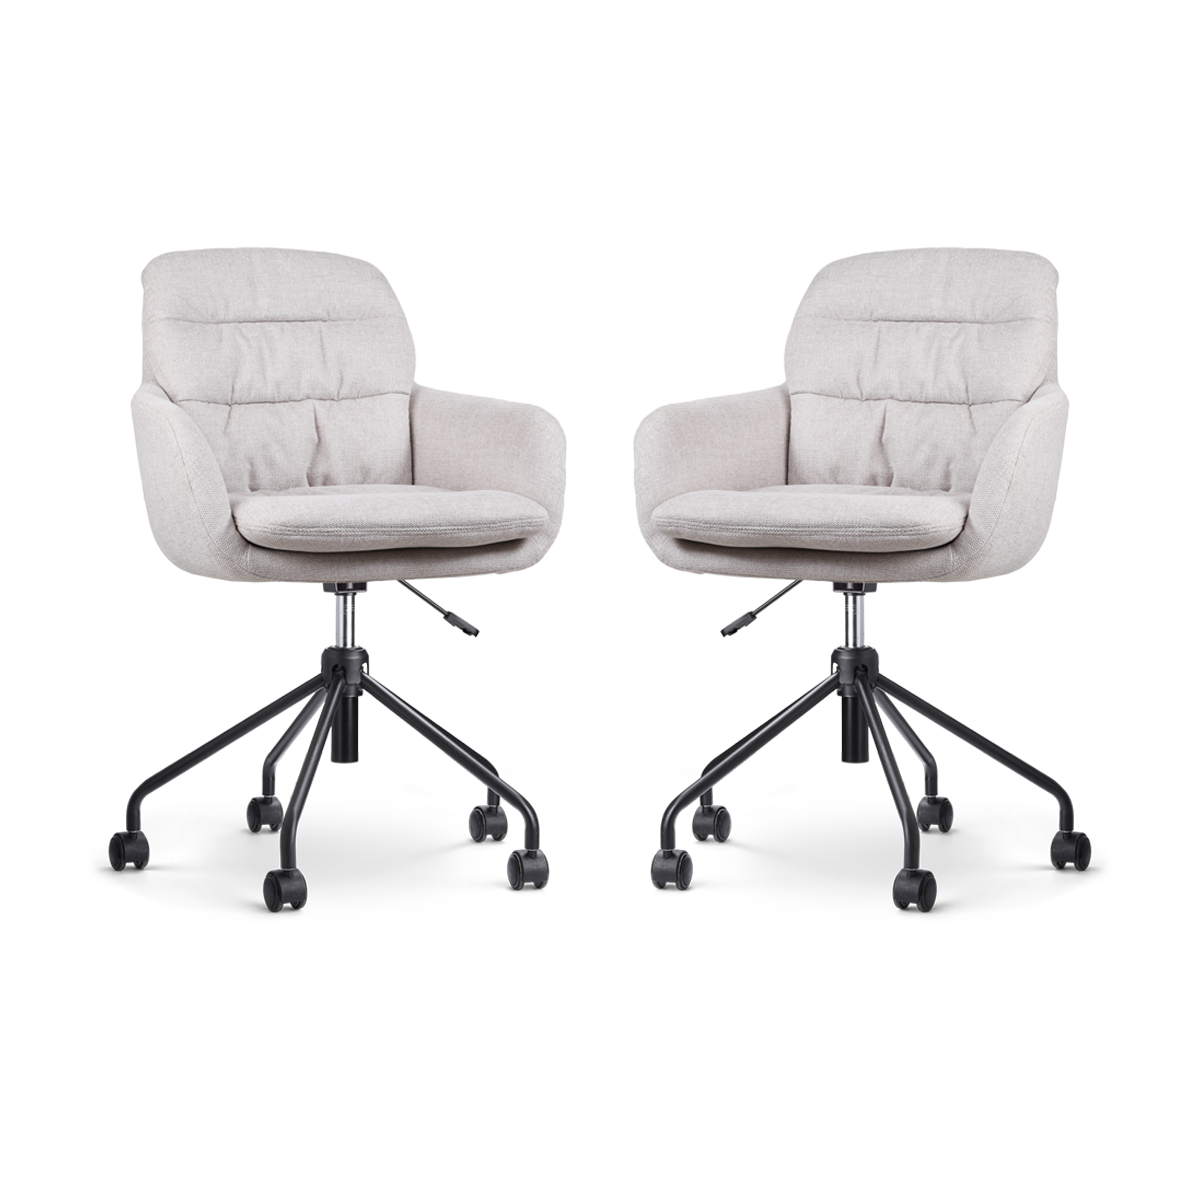 Nolon Nout-Mia bureaustoel beige - zwart onderstel - set van 2